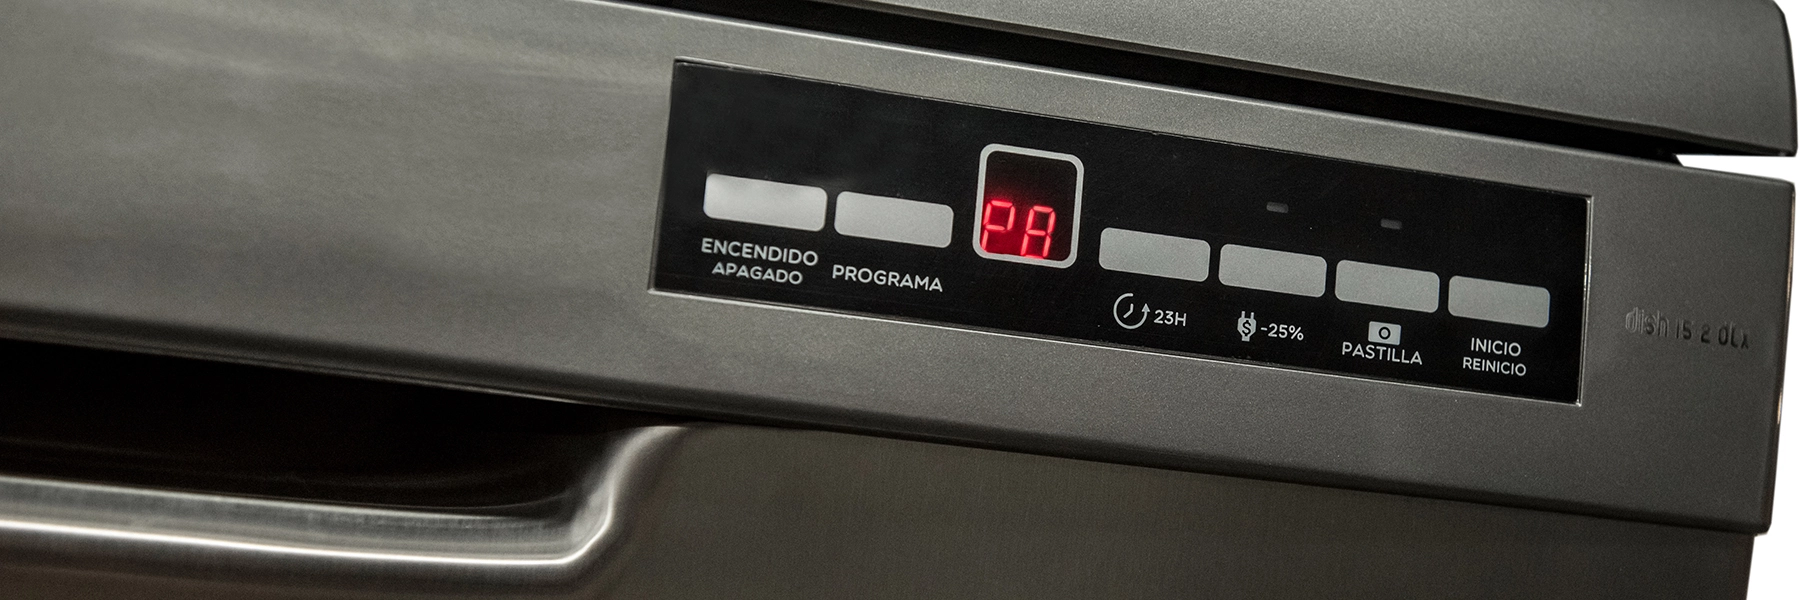 ¿Cuándo te conviene usar los programas rápidos en tu lavavajillas?